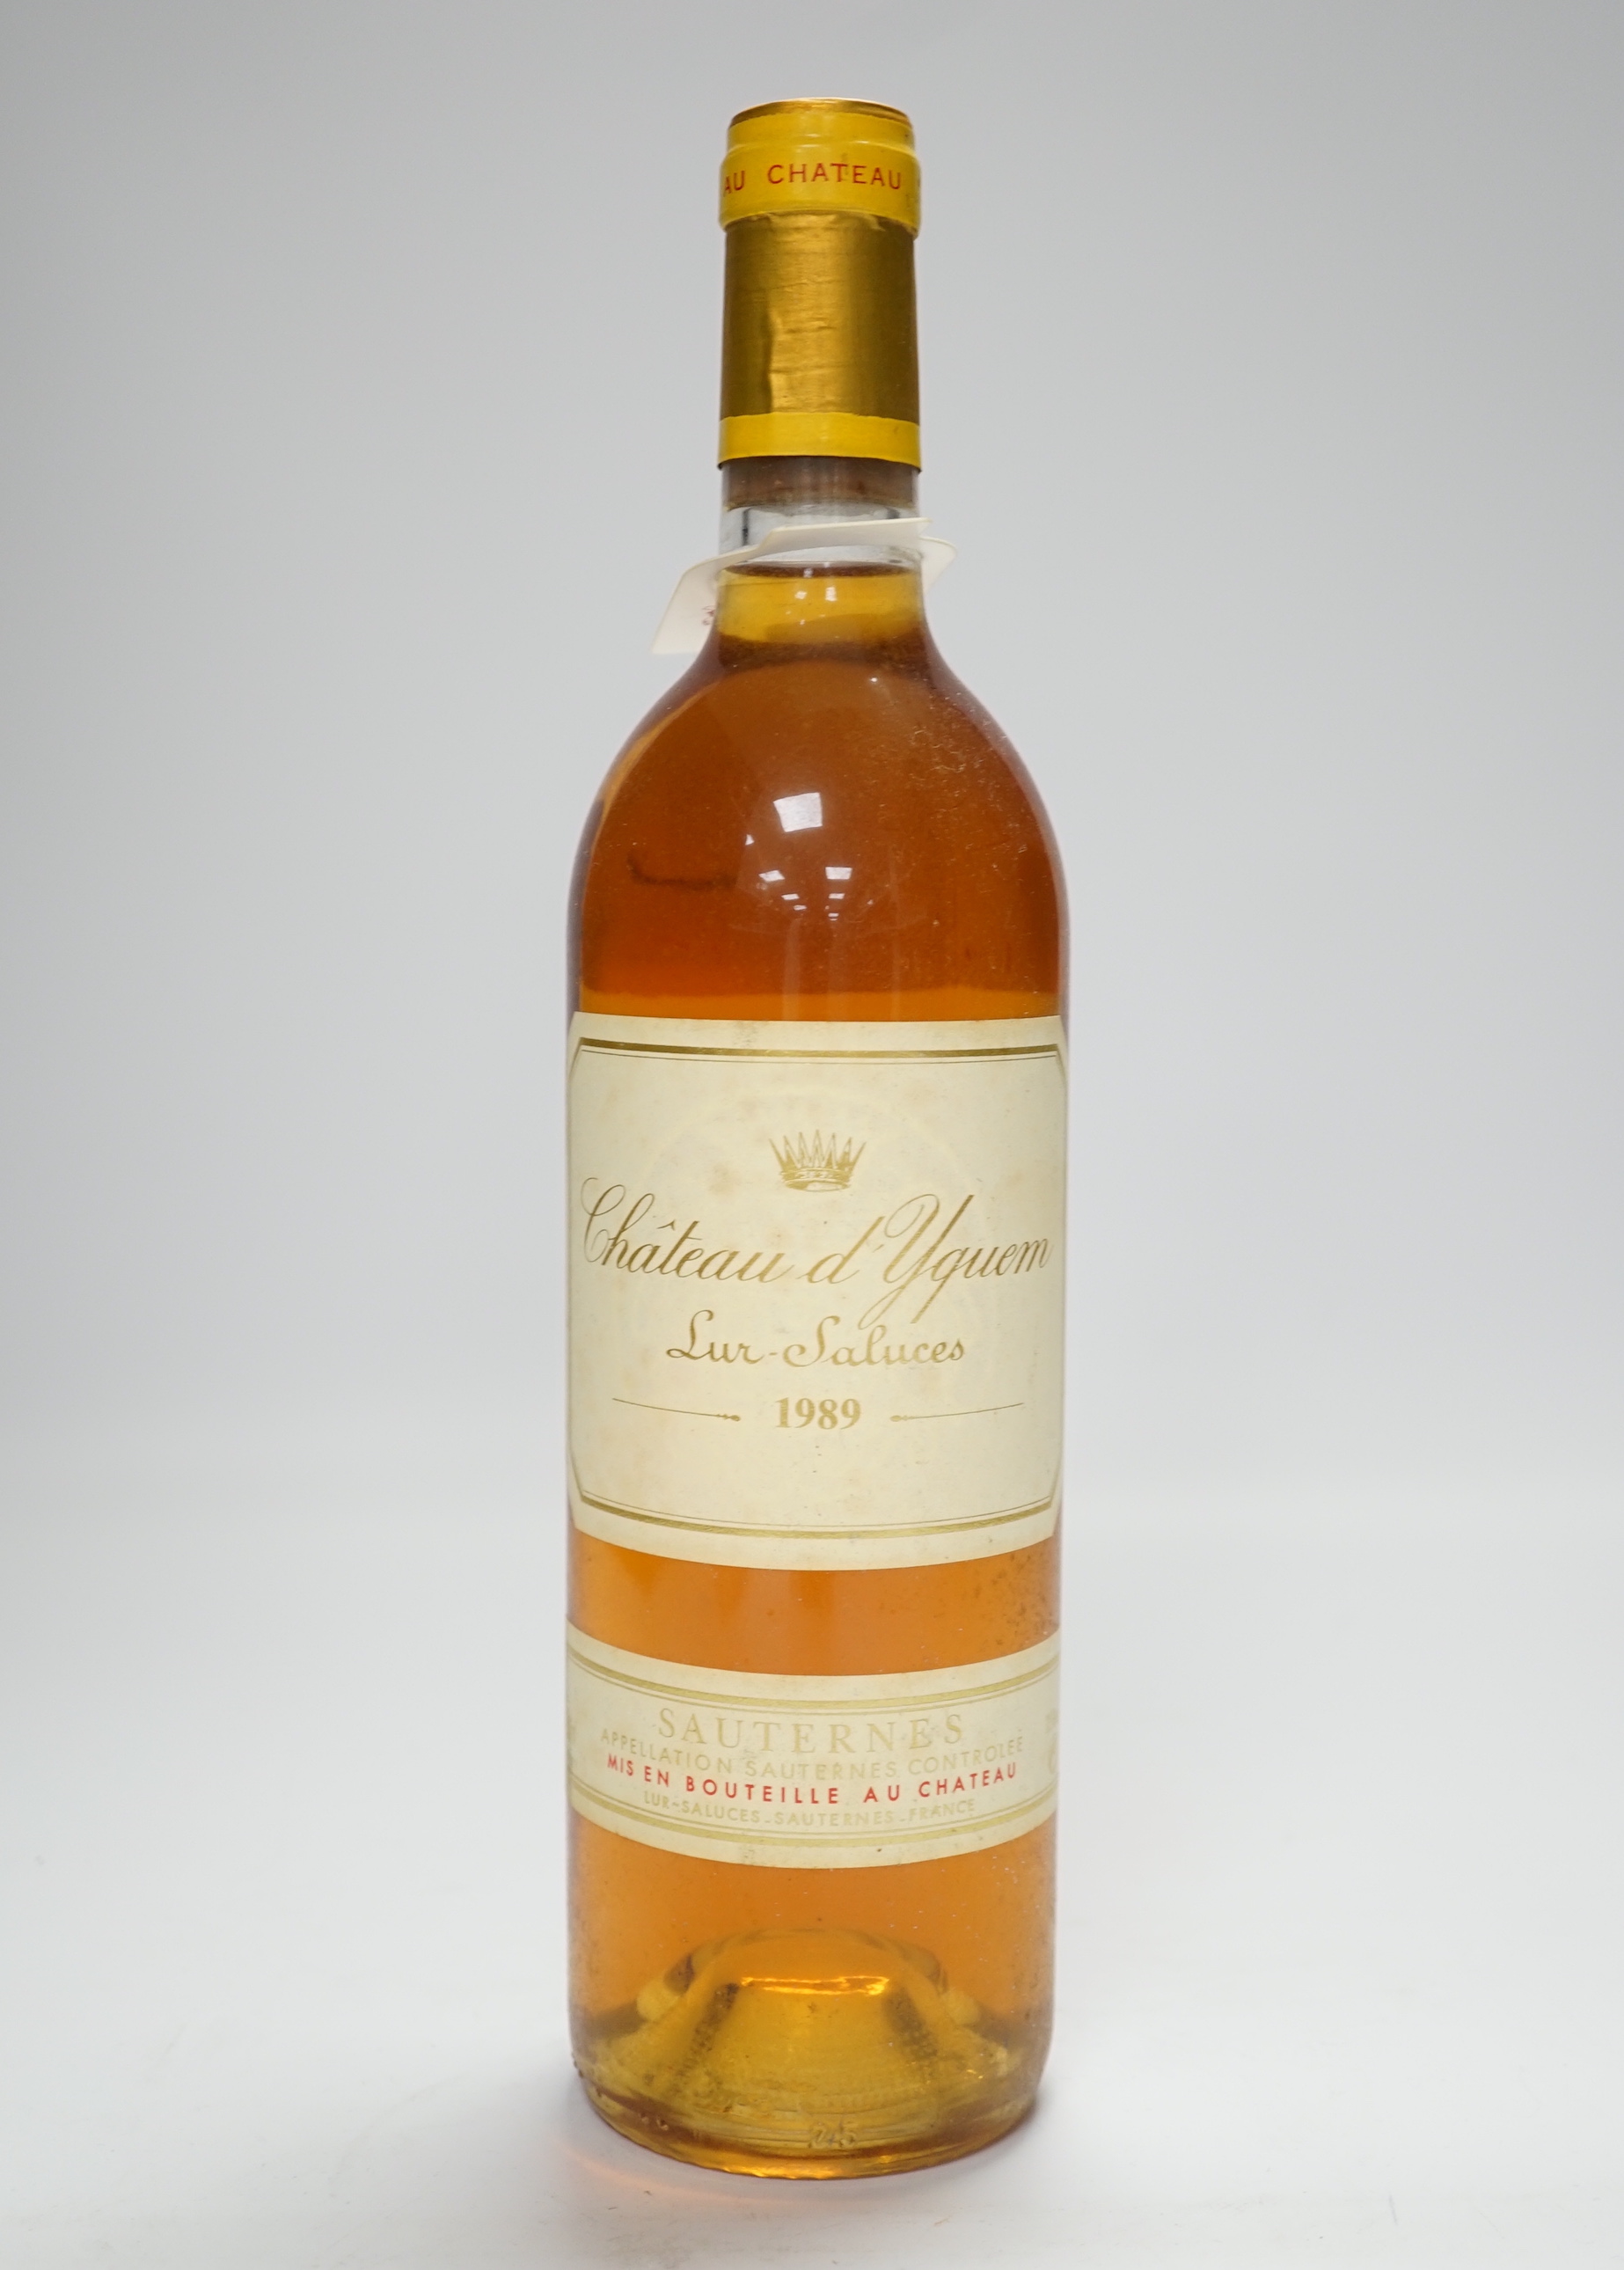 One bottle of Chateau d’Yquem Lur Salues Sauternes 1989